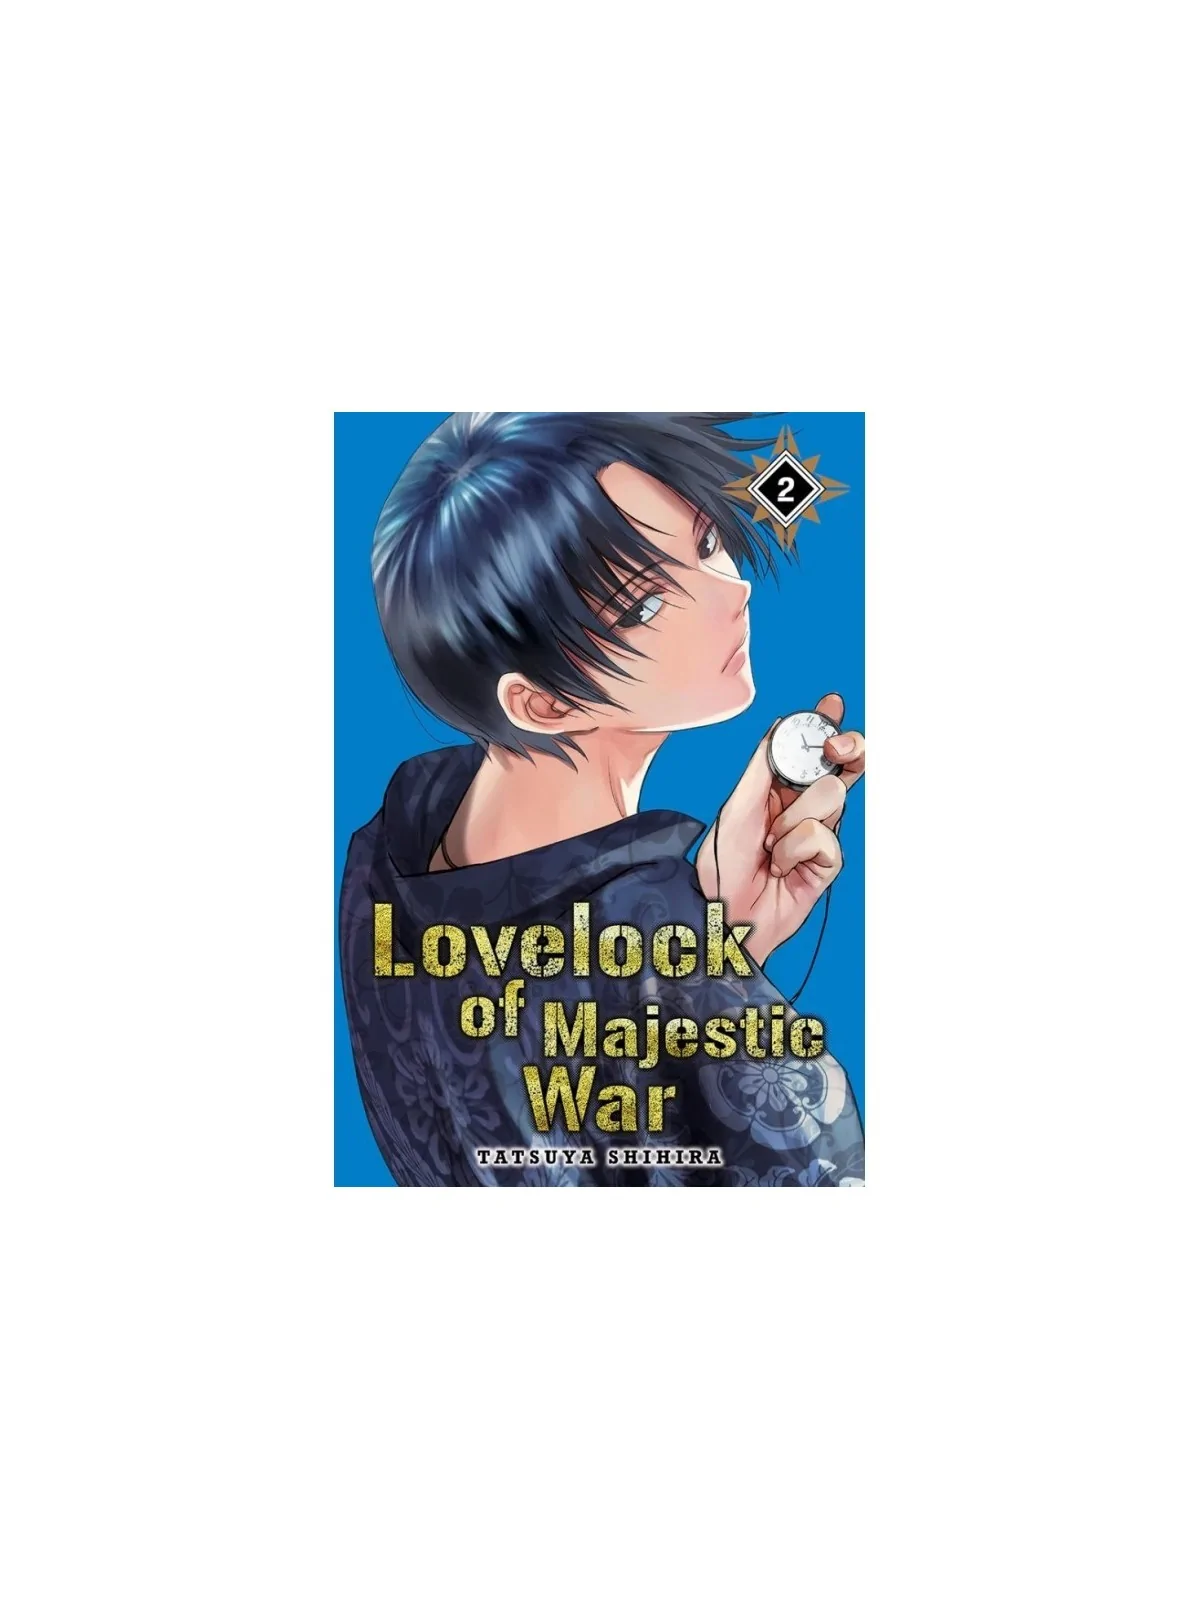 Comprar Lovelock of Majestic War 02 barato al mejor precio 8,07 € de M